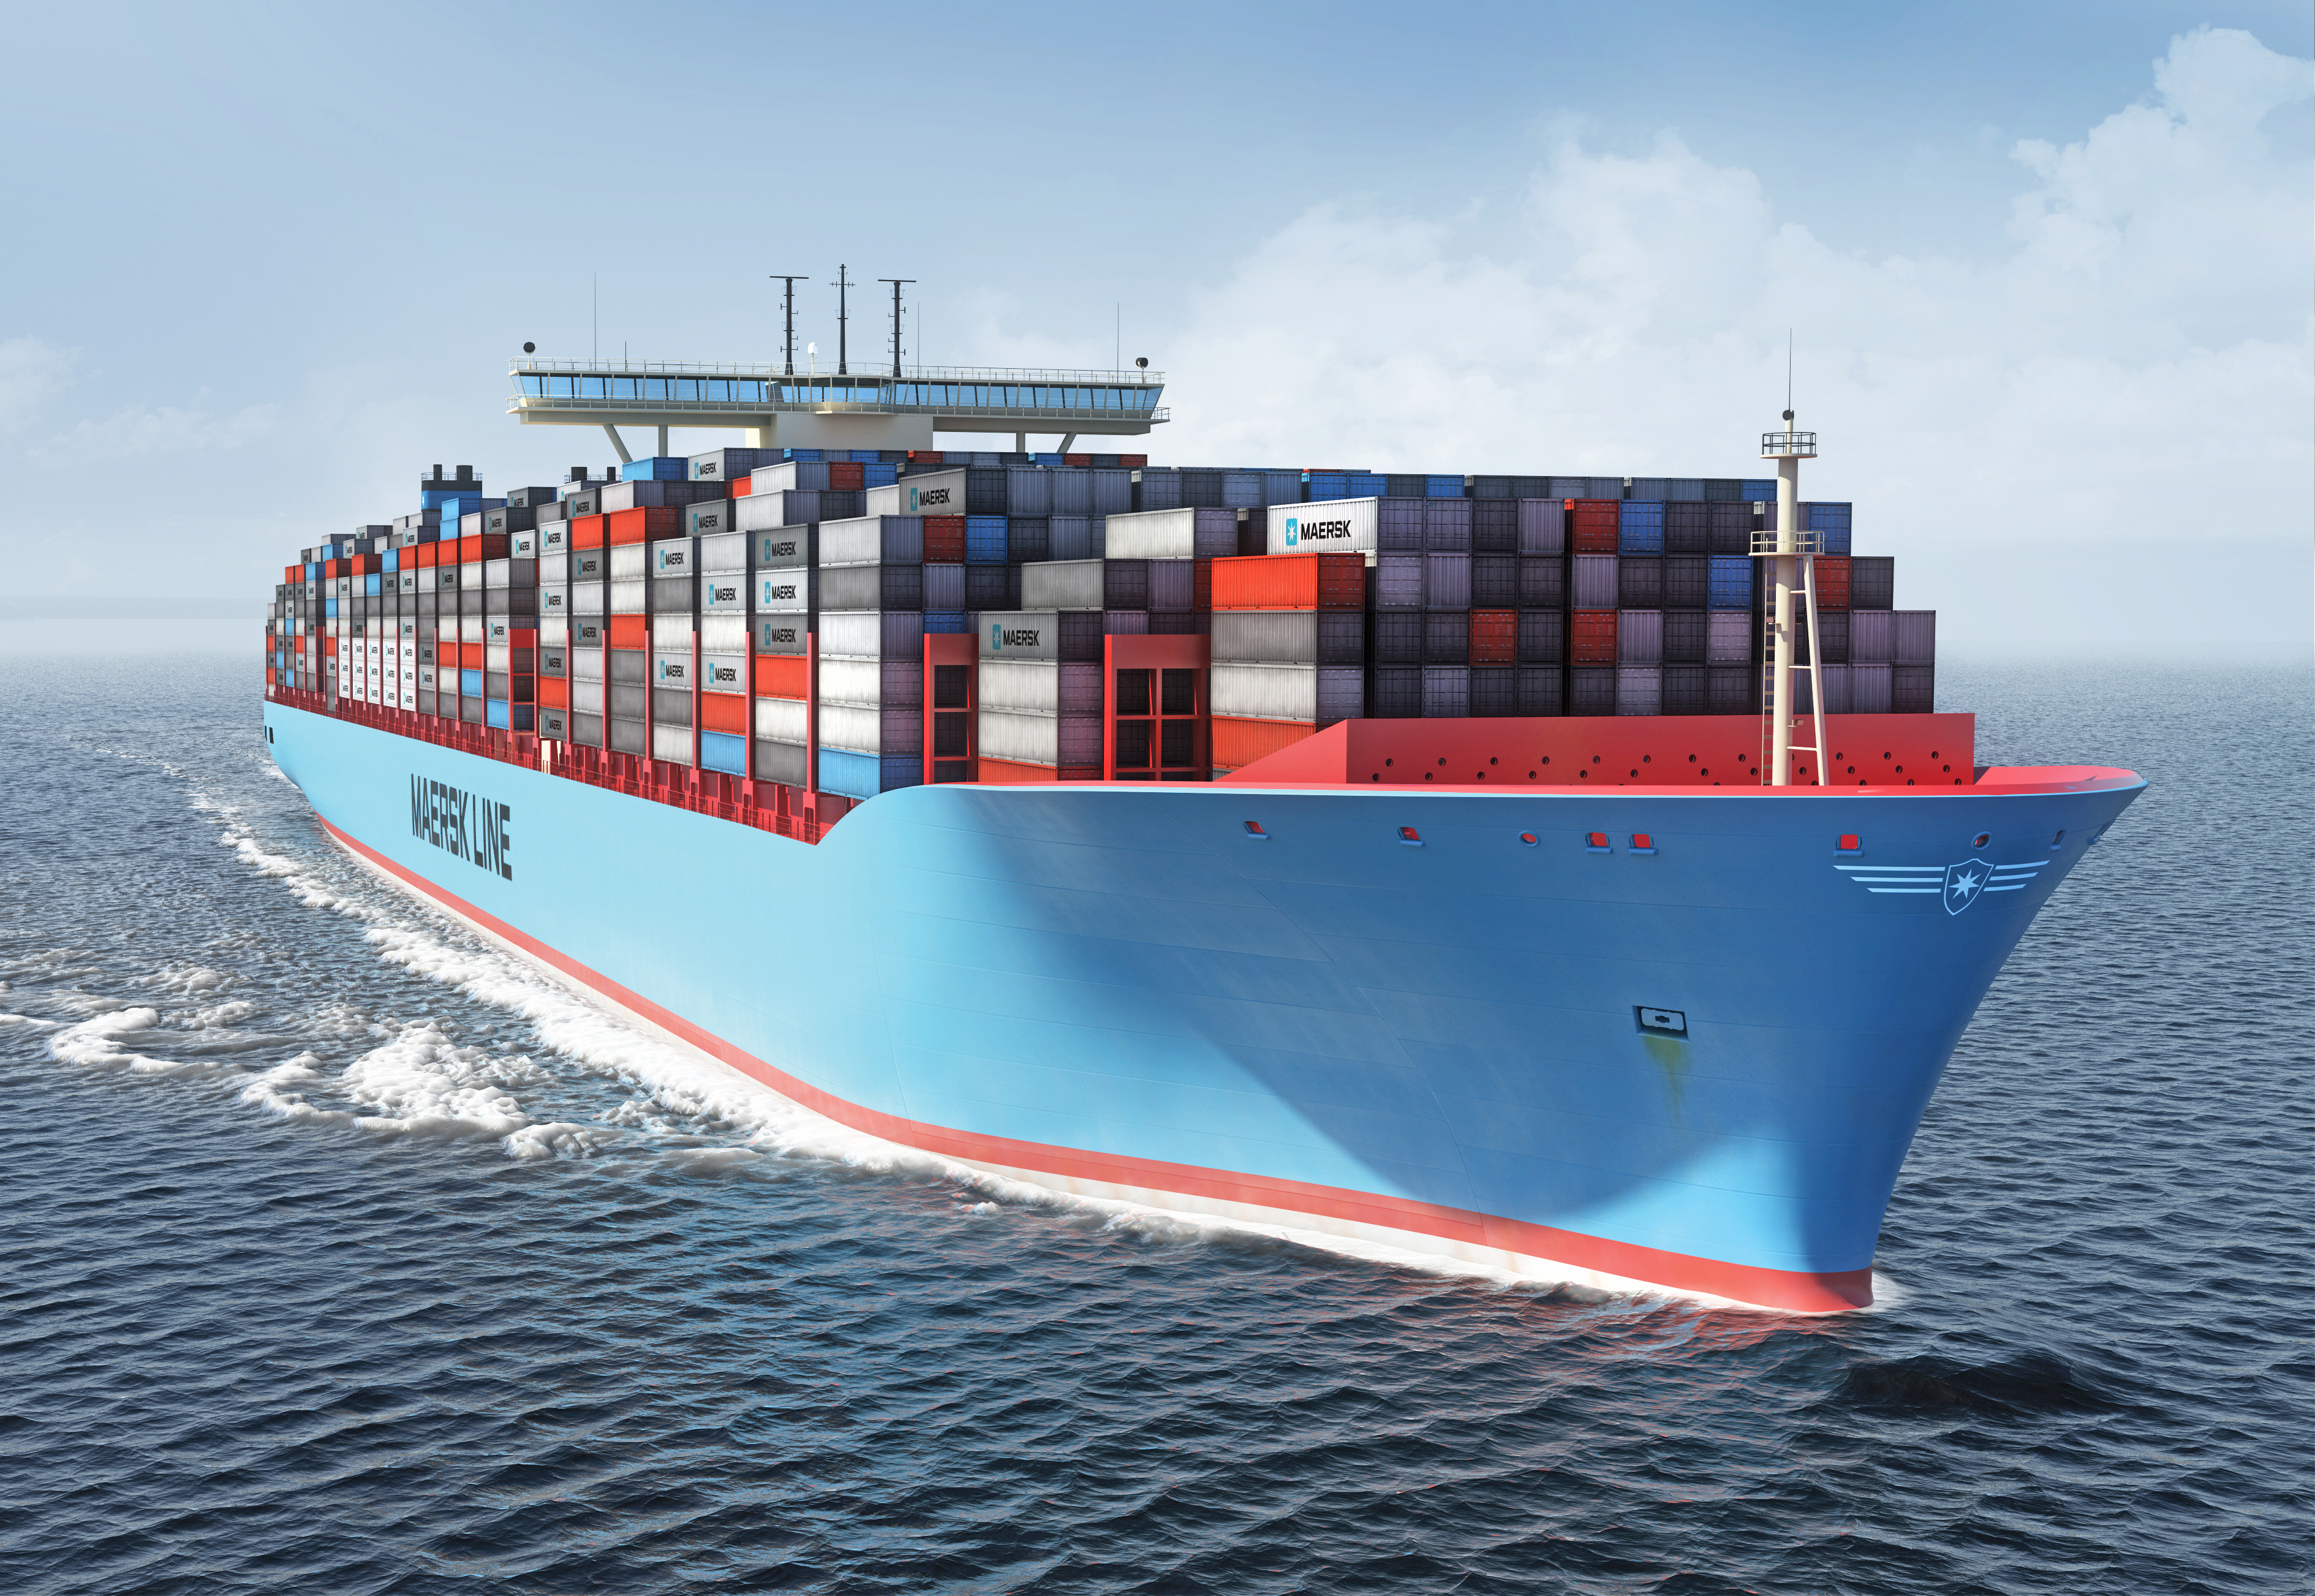     Un poids lourd du transport maritime quitte les Antilles

